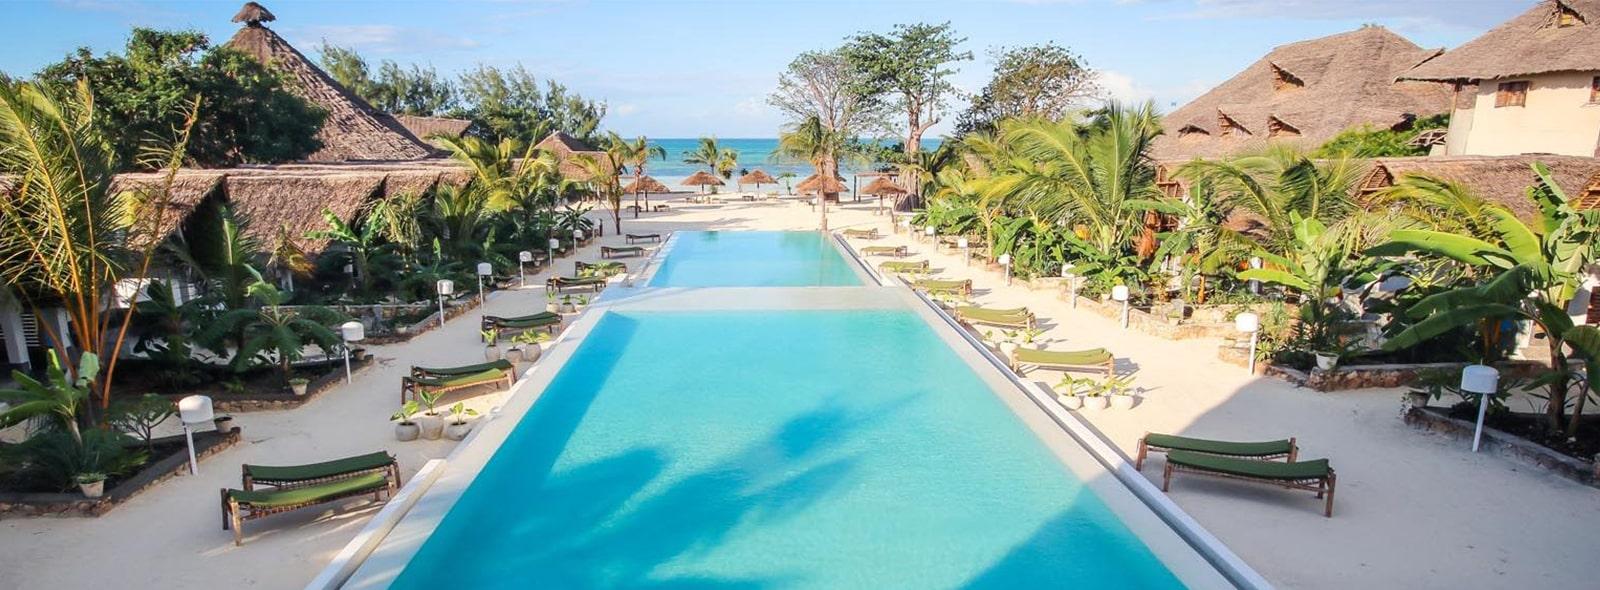 Bienvenue au Fun Beach Resort, profitez du spot de kitesurf à Paje sur Zanzibar et des 2 grandes piscines